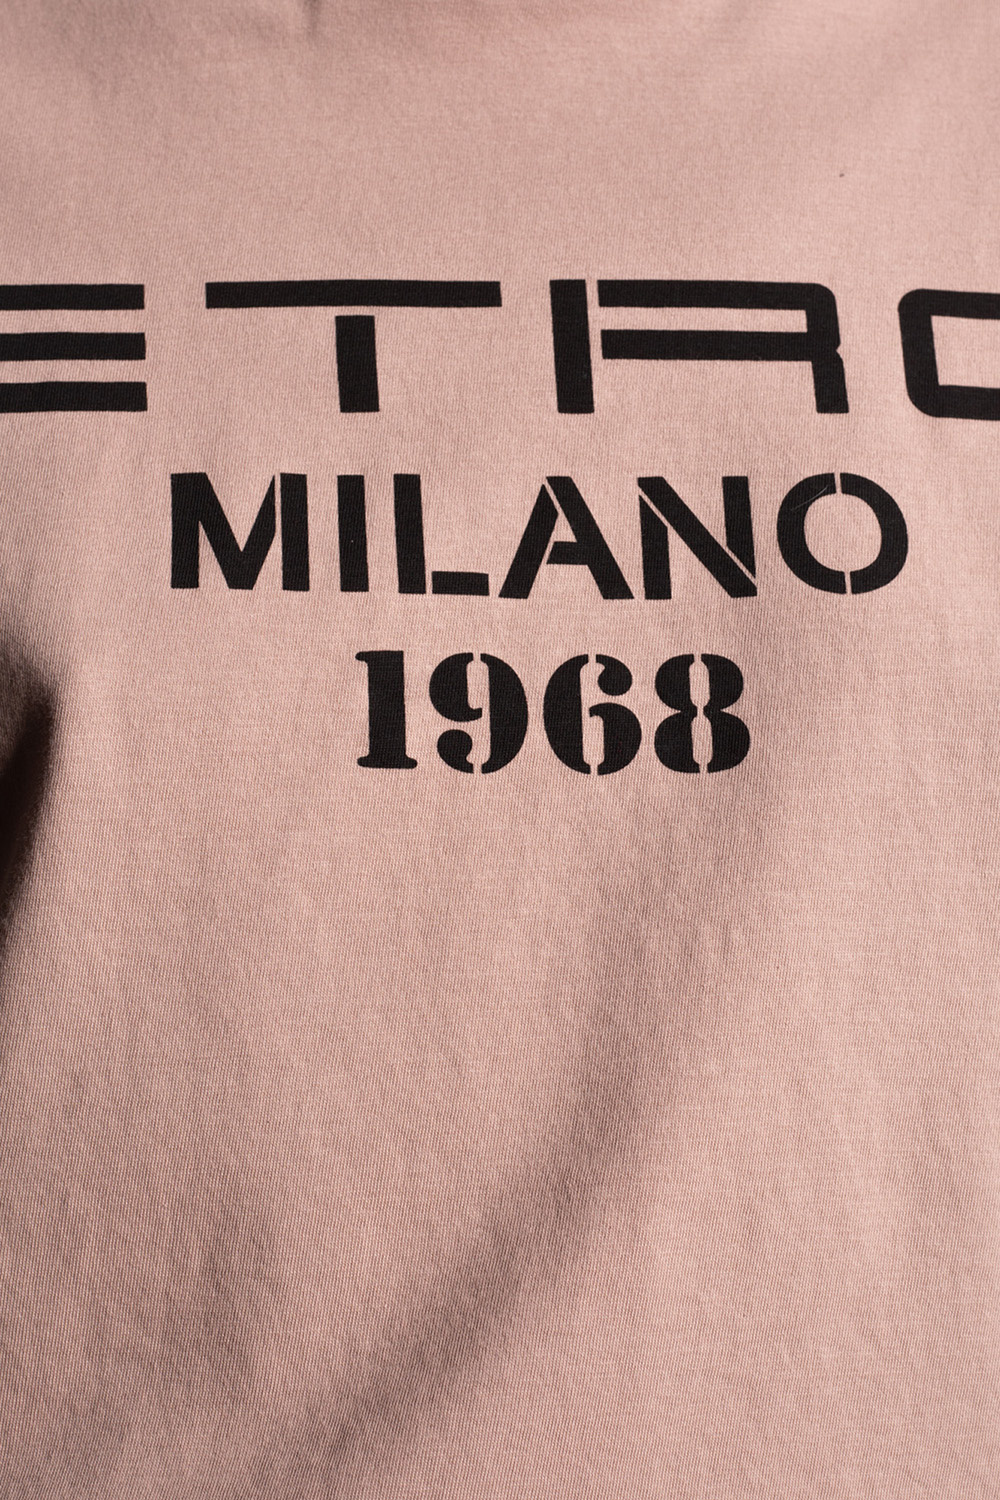 Etro Logo T-shirt | Women's Clothing | IetpShops